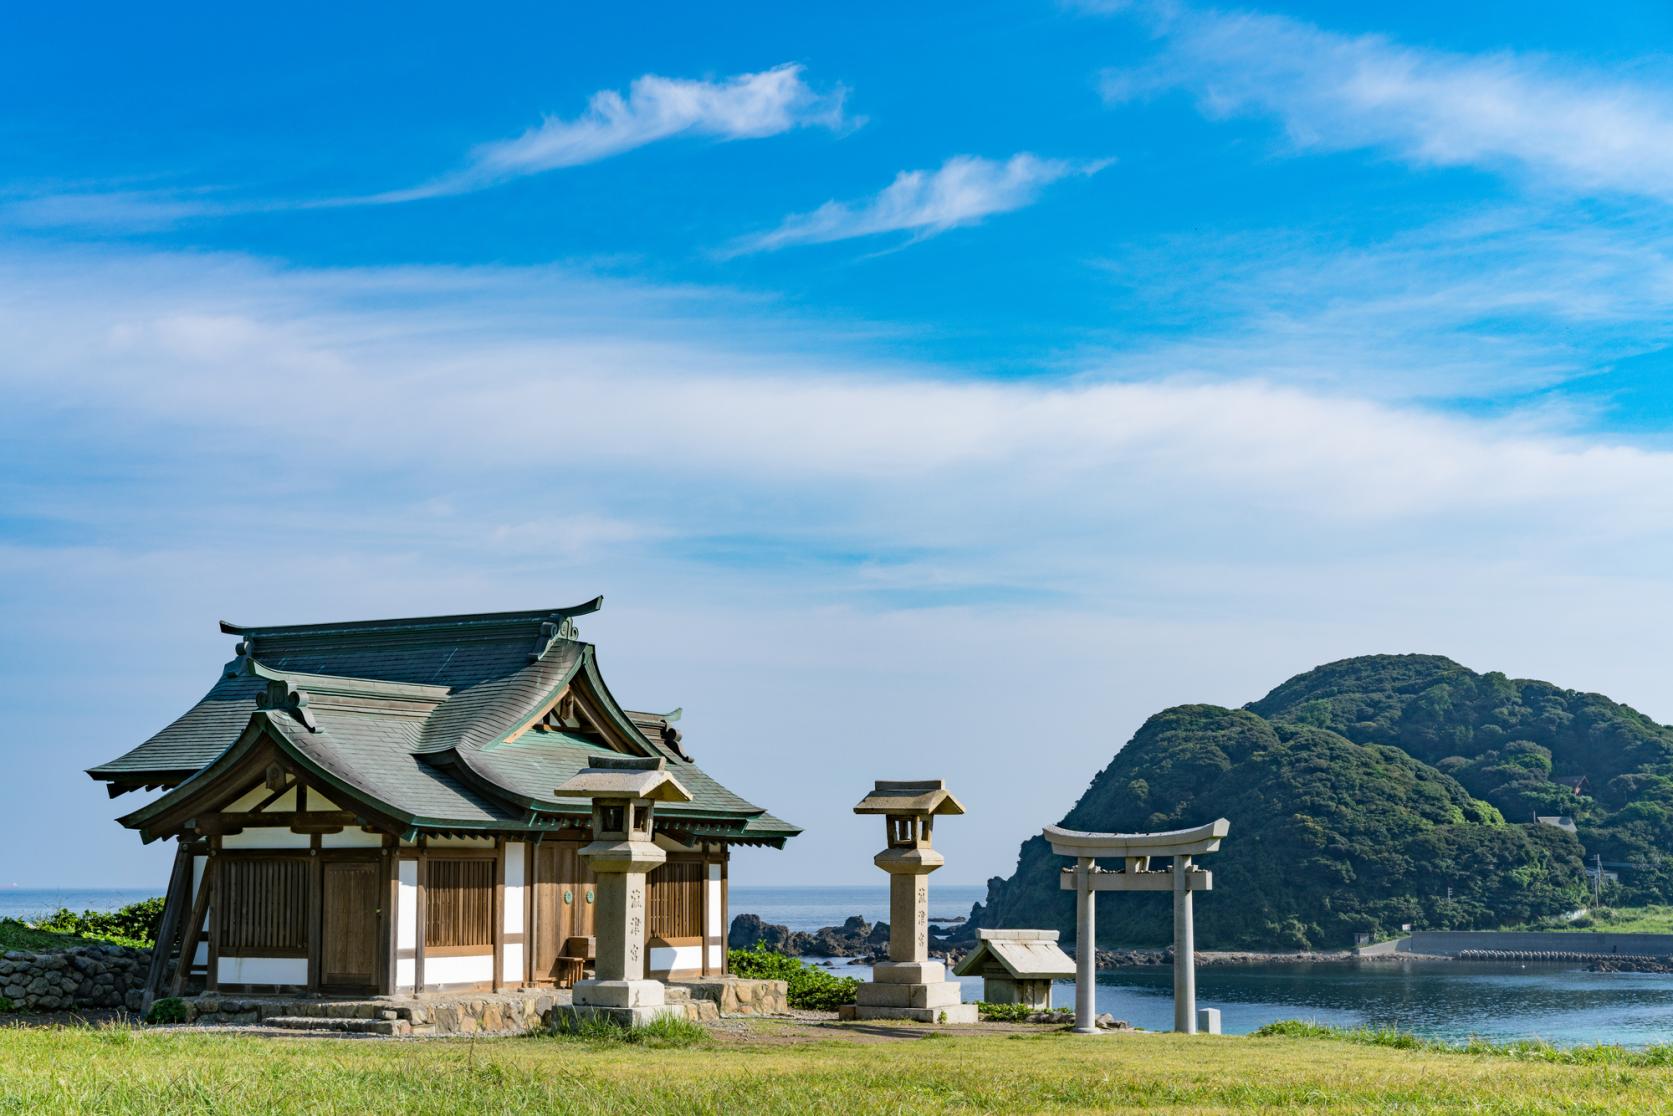 世界遺産「『神宿る島』宗像・沖ノ島と関連遺産群」を巡る